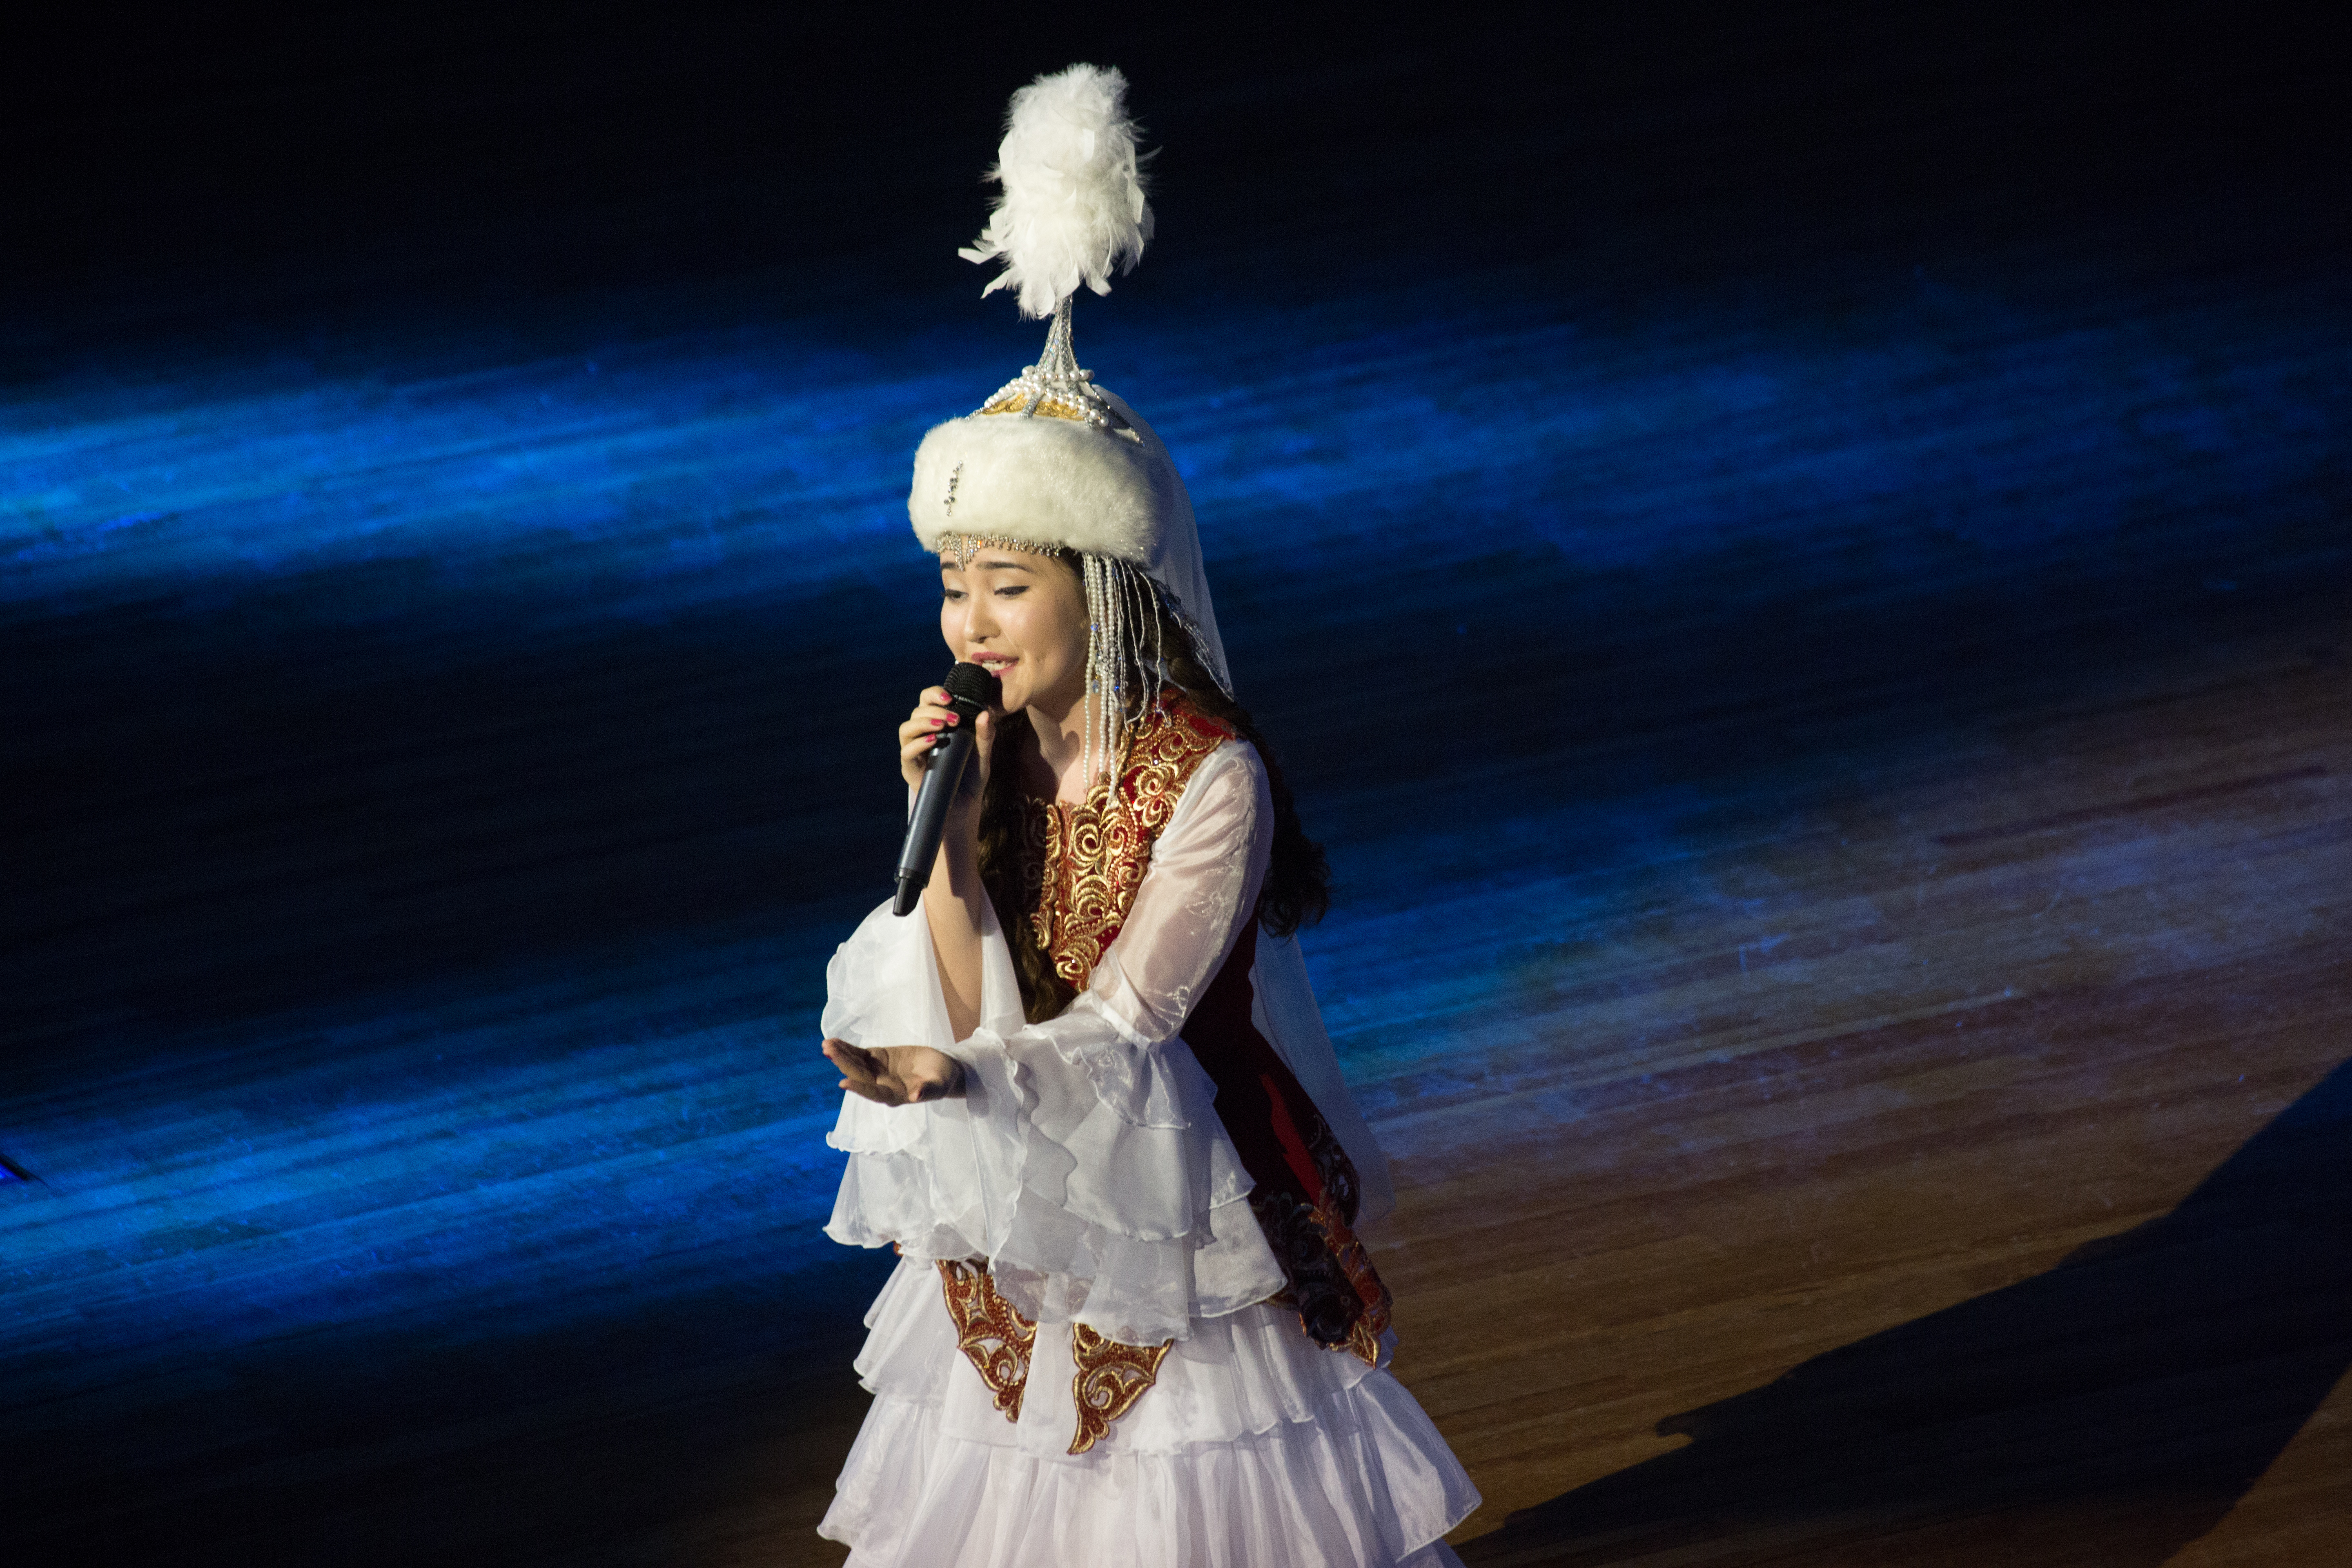 Песня в казахстане я живу. Казашка танцует. Алтын на голове. Казахские песни популярные исполняет женщина. Кумыкская песня Алтын Кызыл чачларынг.